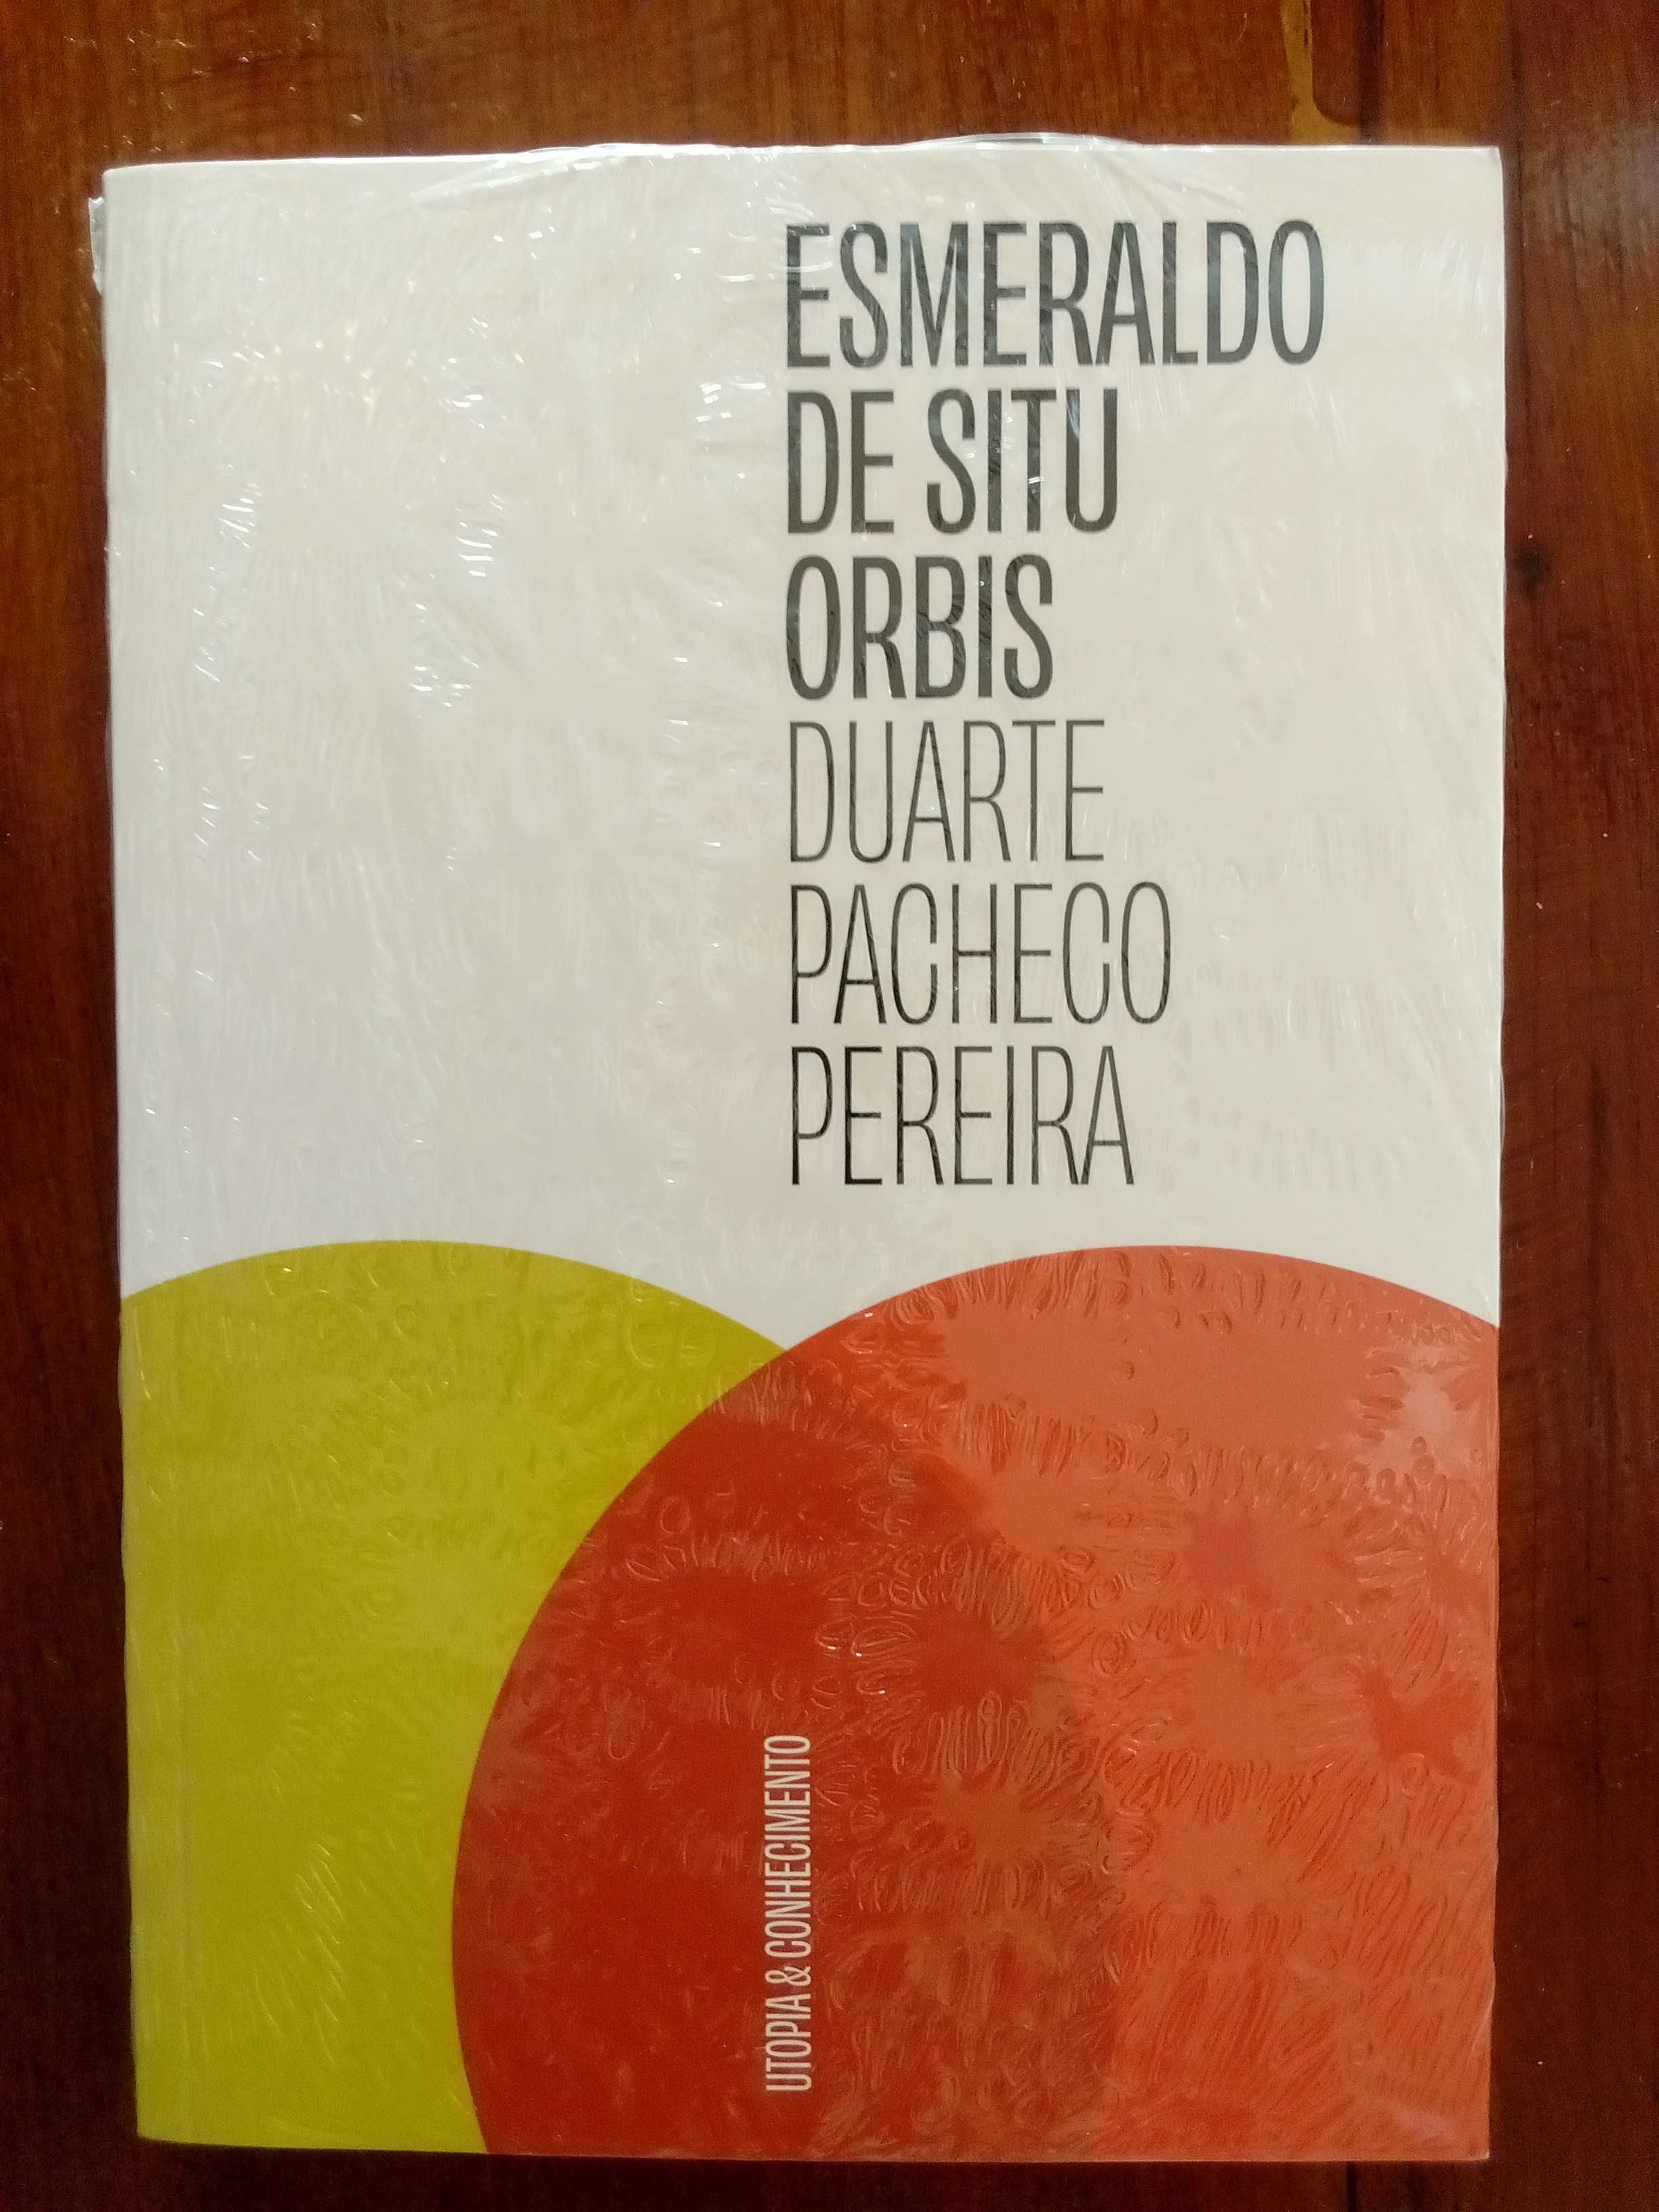 Duarte Pacheco Pereira - Esmeraldo de Situ Orbis [novo, selado]